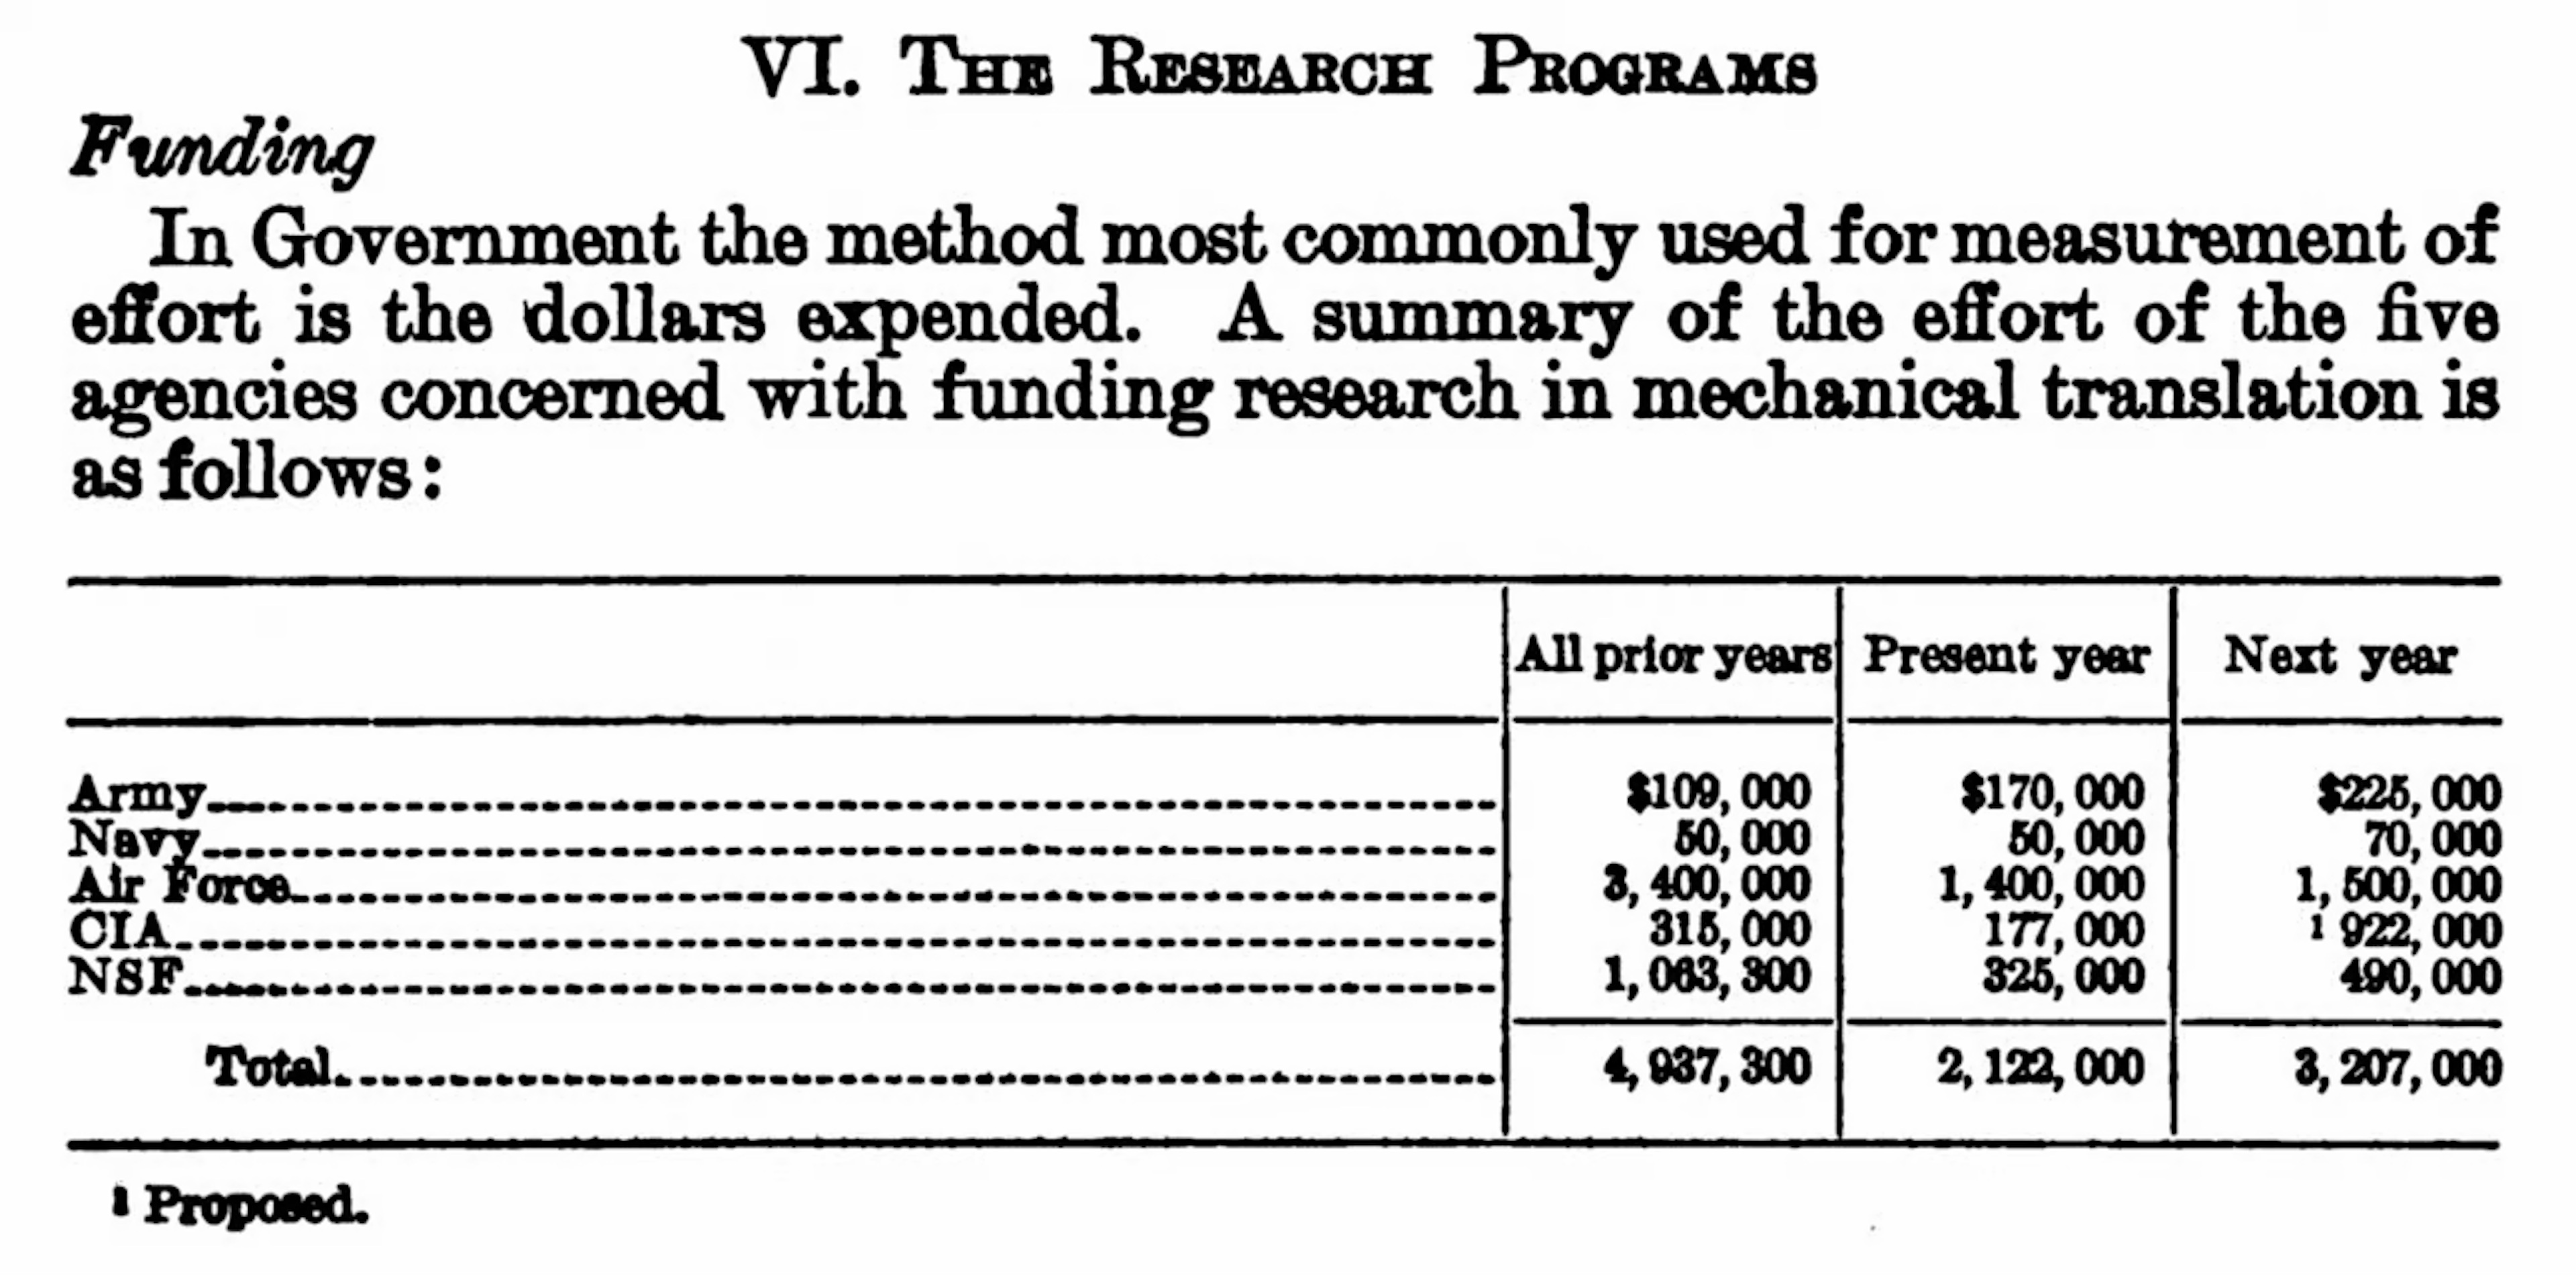 5개 정부 기관의 자금 지원, 보고서 날짜는 1960년입니다.